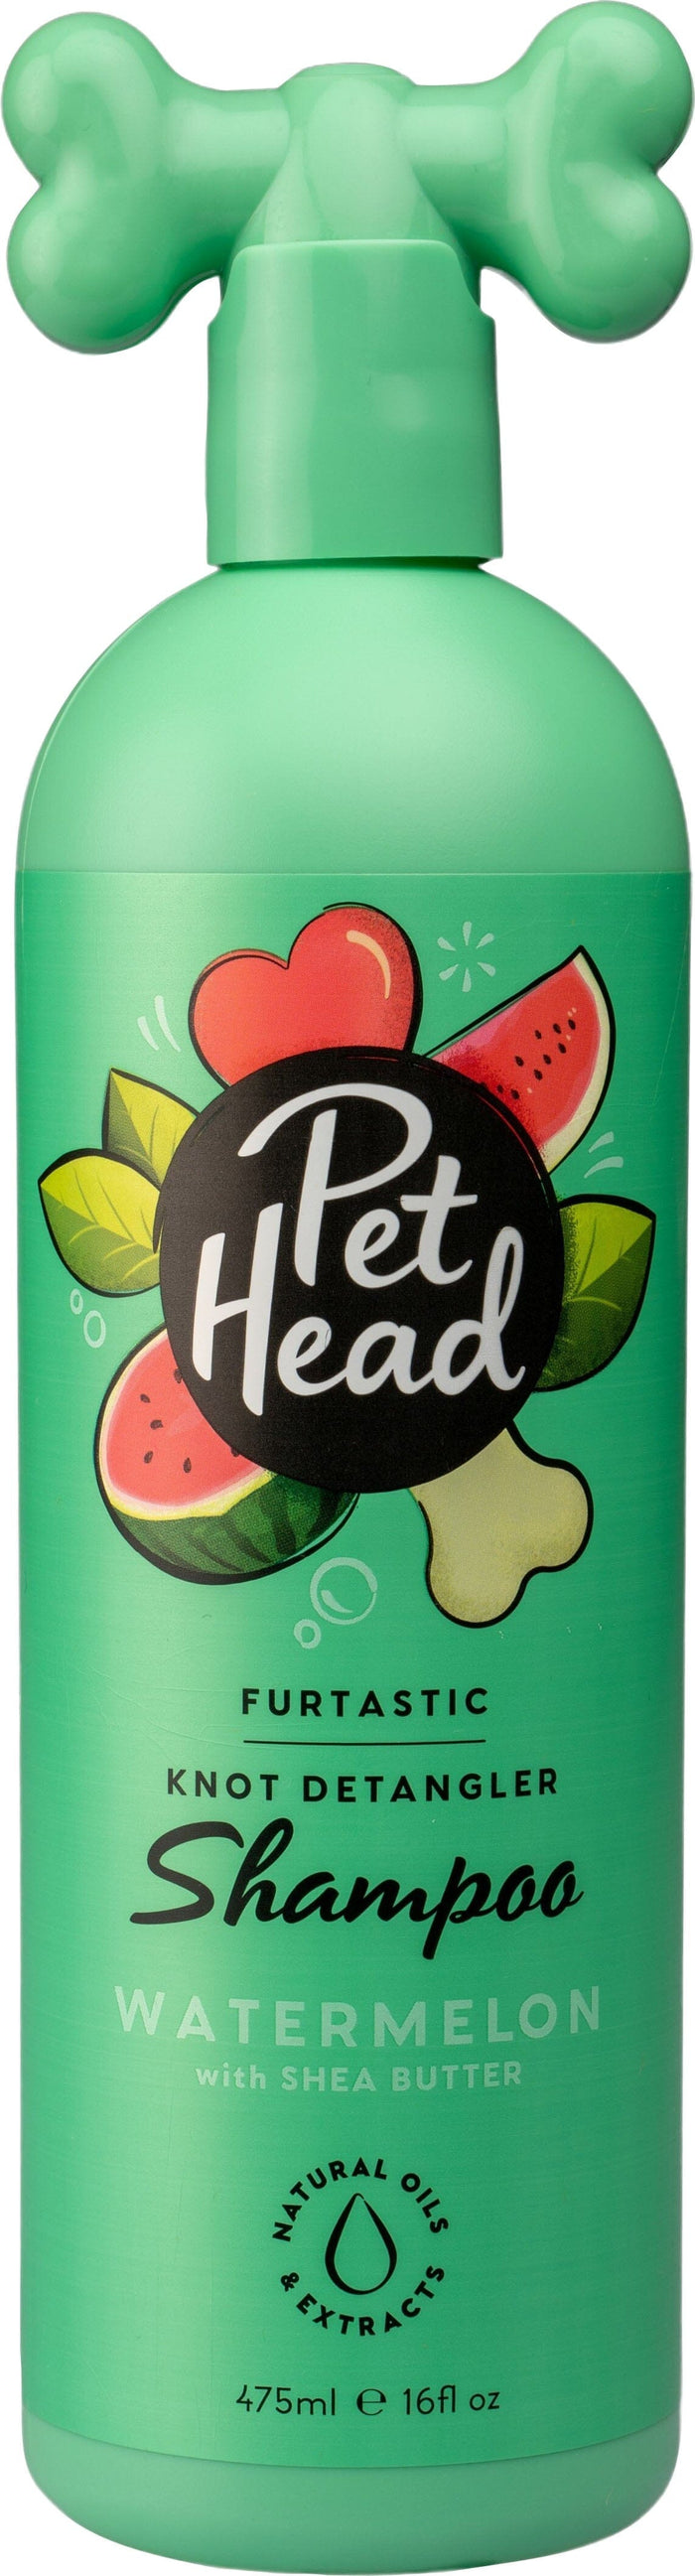 Pet Head Furtastic Dog Shampoo - Watermelon - 16 Oz